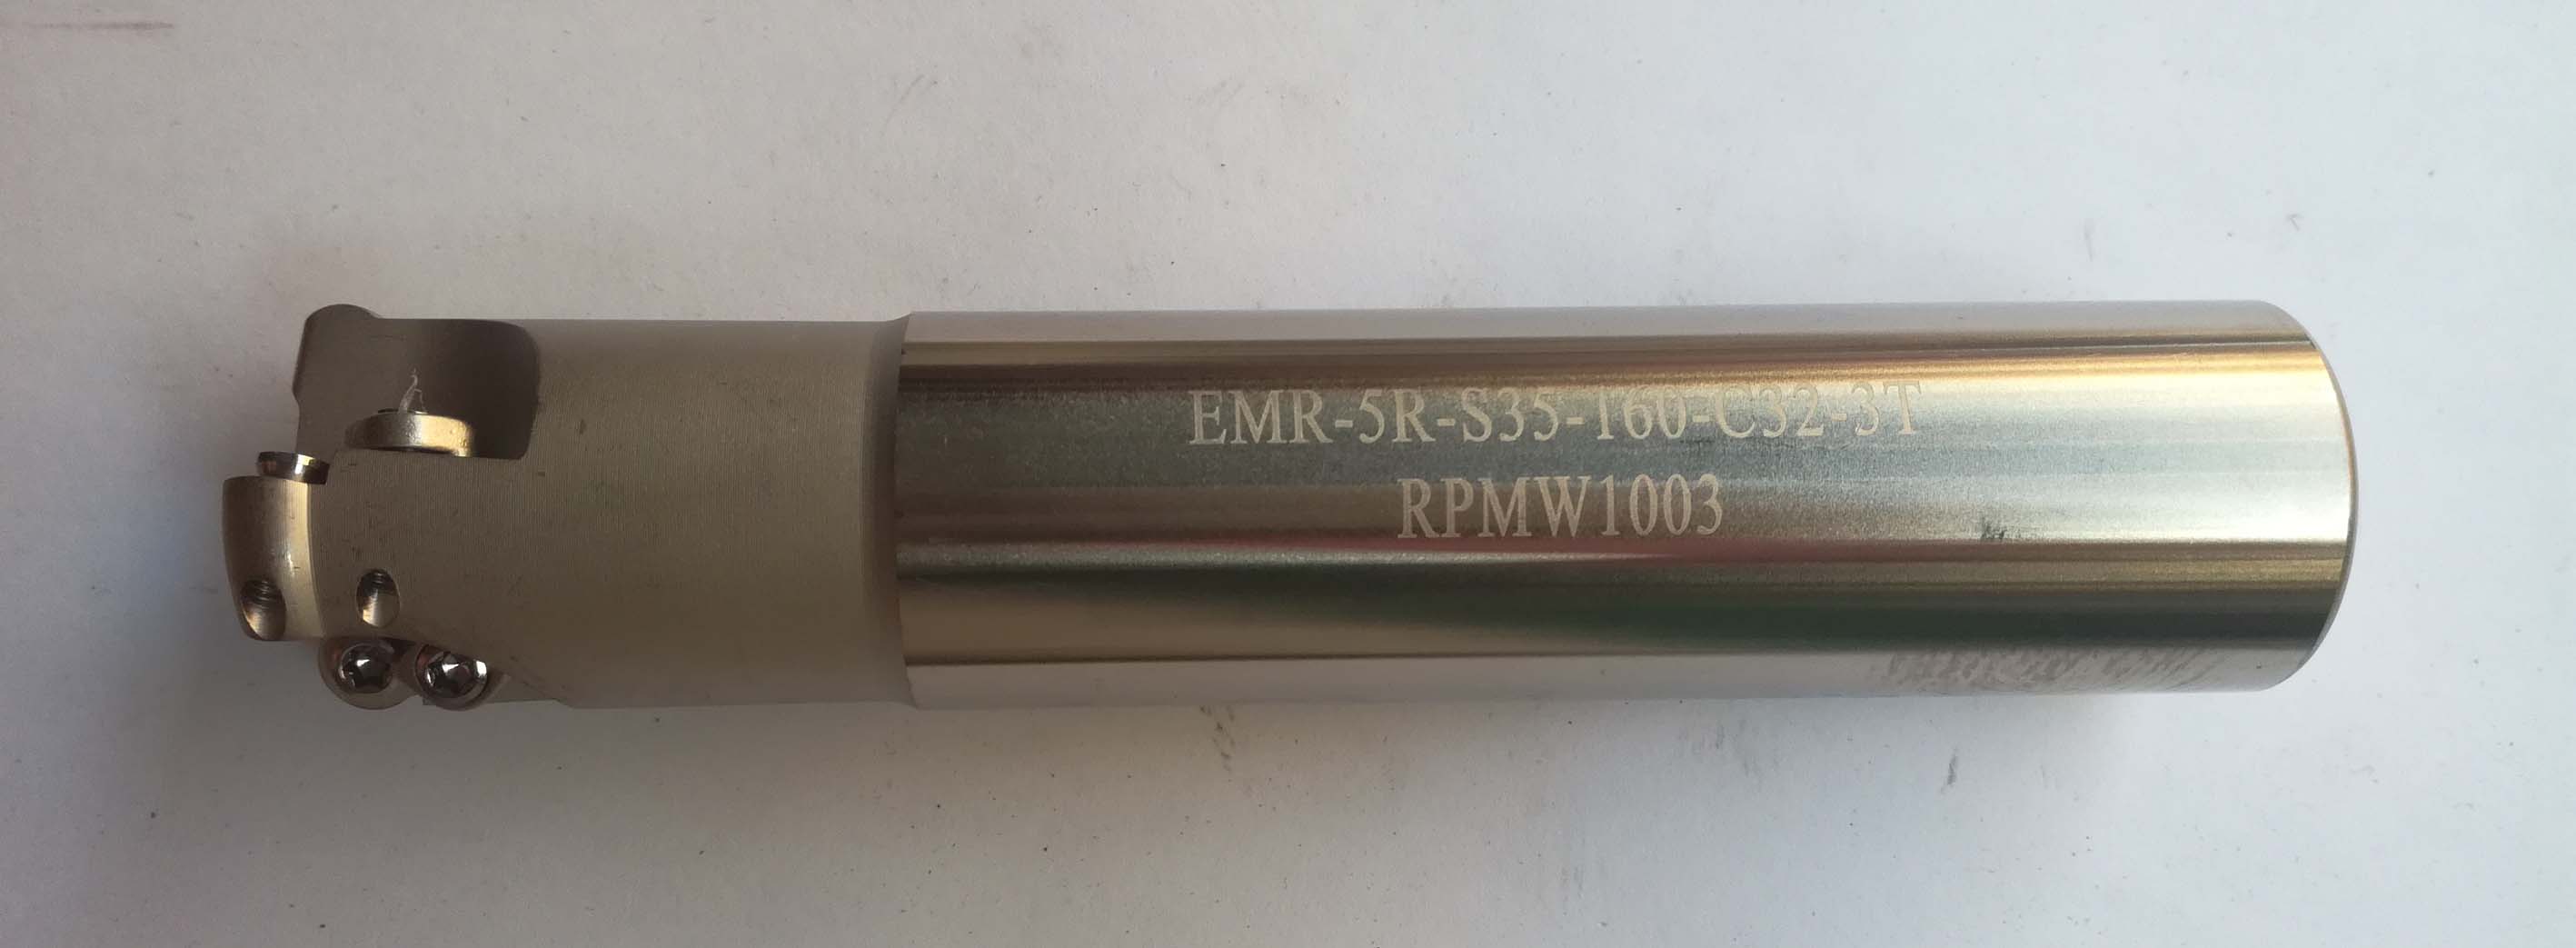 EMR5R-35-160-C32